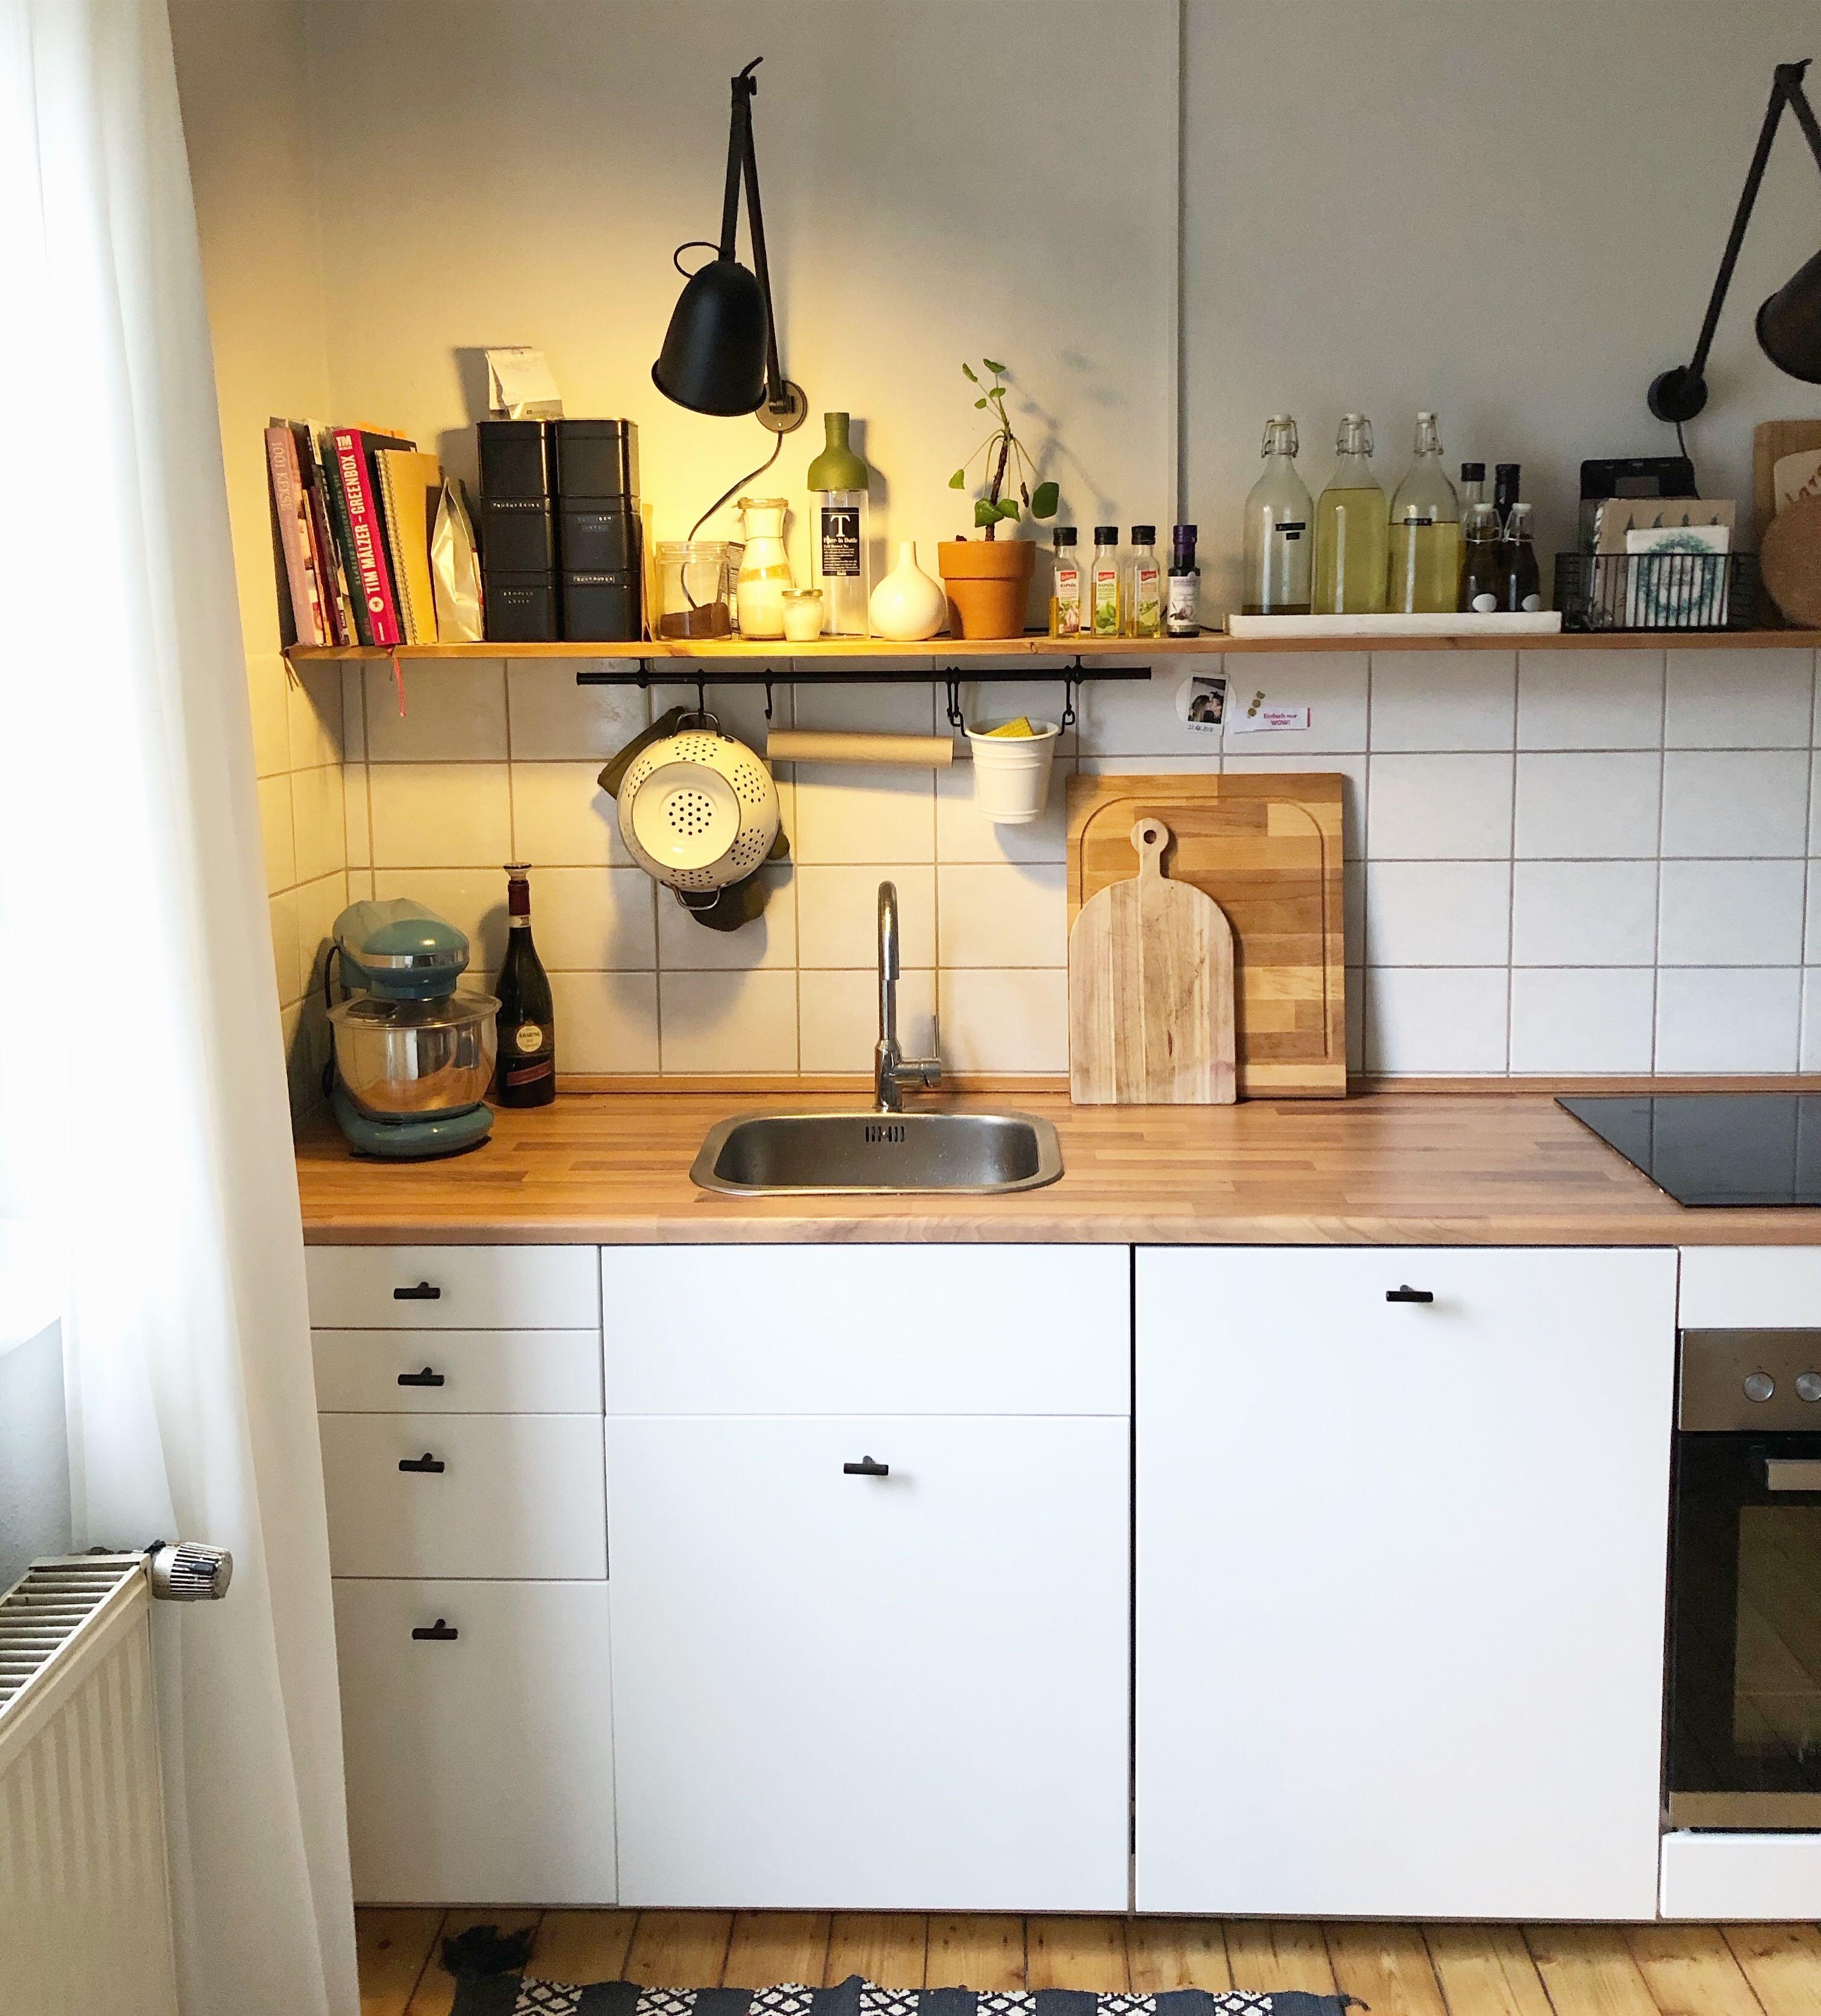 Ich liebe unsere Ikea Küche einfach! #küche #kitchen #küchenliebe #scandiküche #couchstyle